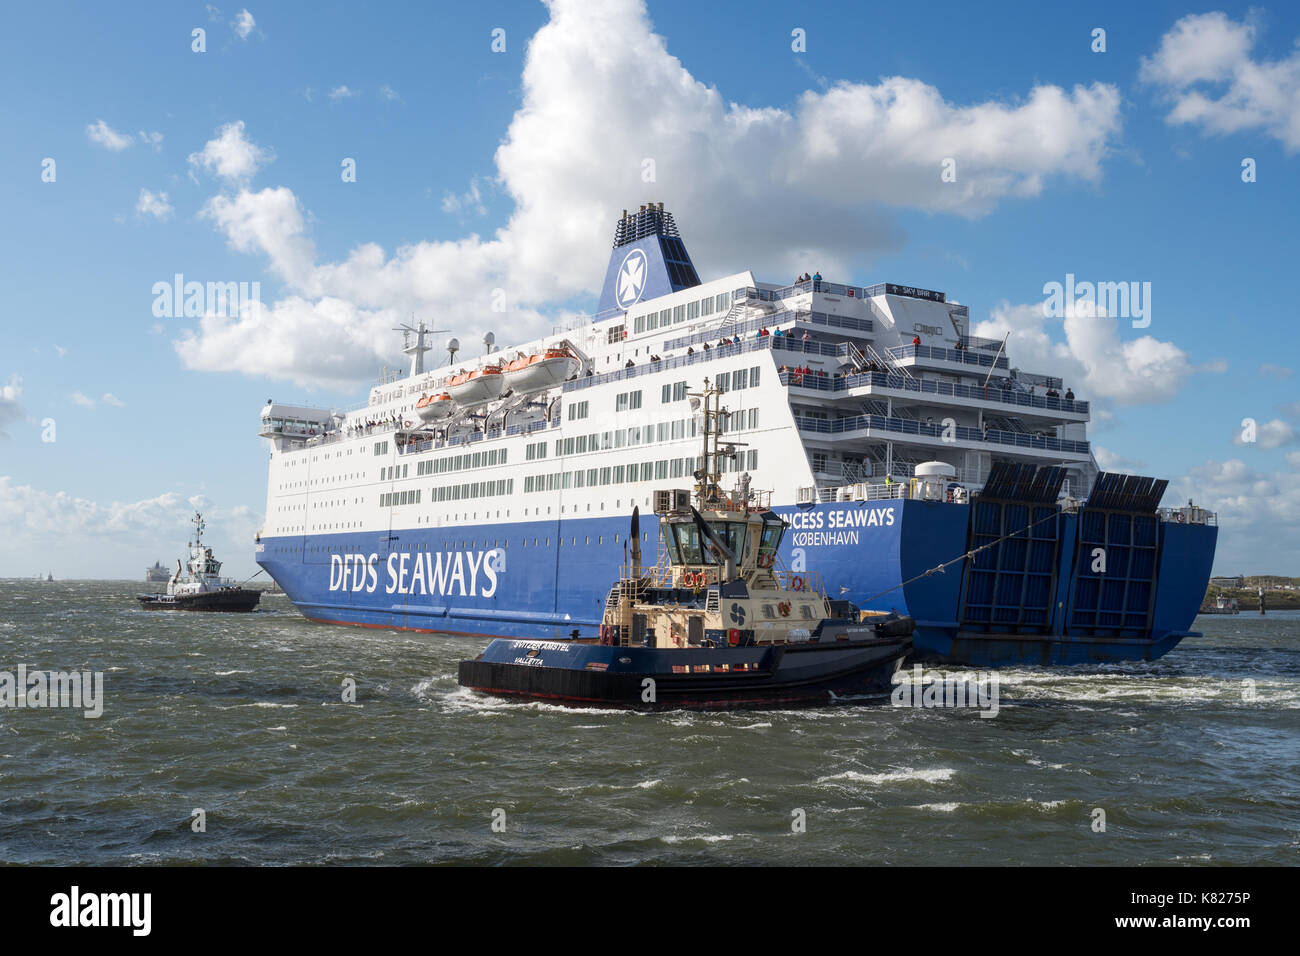 DFDS north sea ferry Princess Seaways essendo assistito in Ijmuiden porto dai rimorchiatori a causa del forte vento onshore, Olanda, Europa Foto Stock